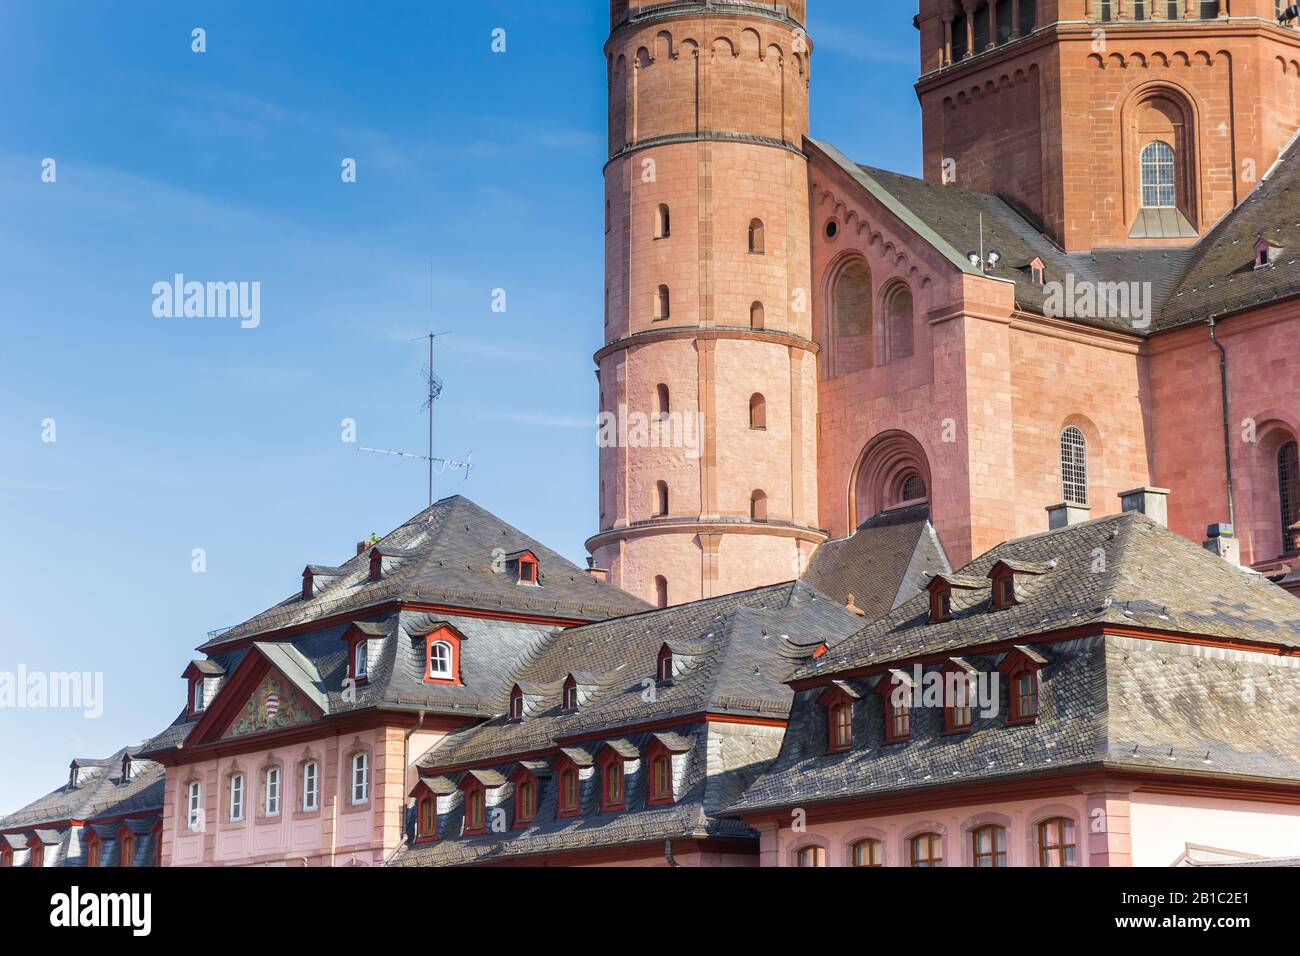 Case storiche e torri cattedrale nella piazza del mercato di Magonza, Germania Foto Stock